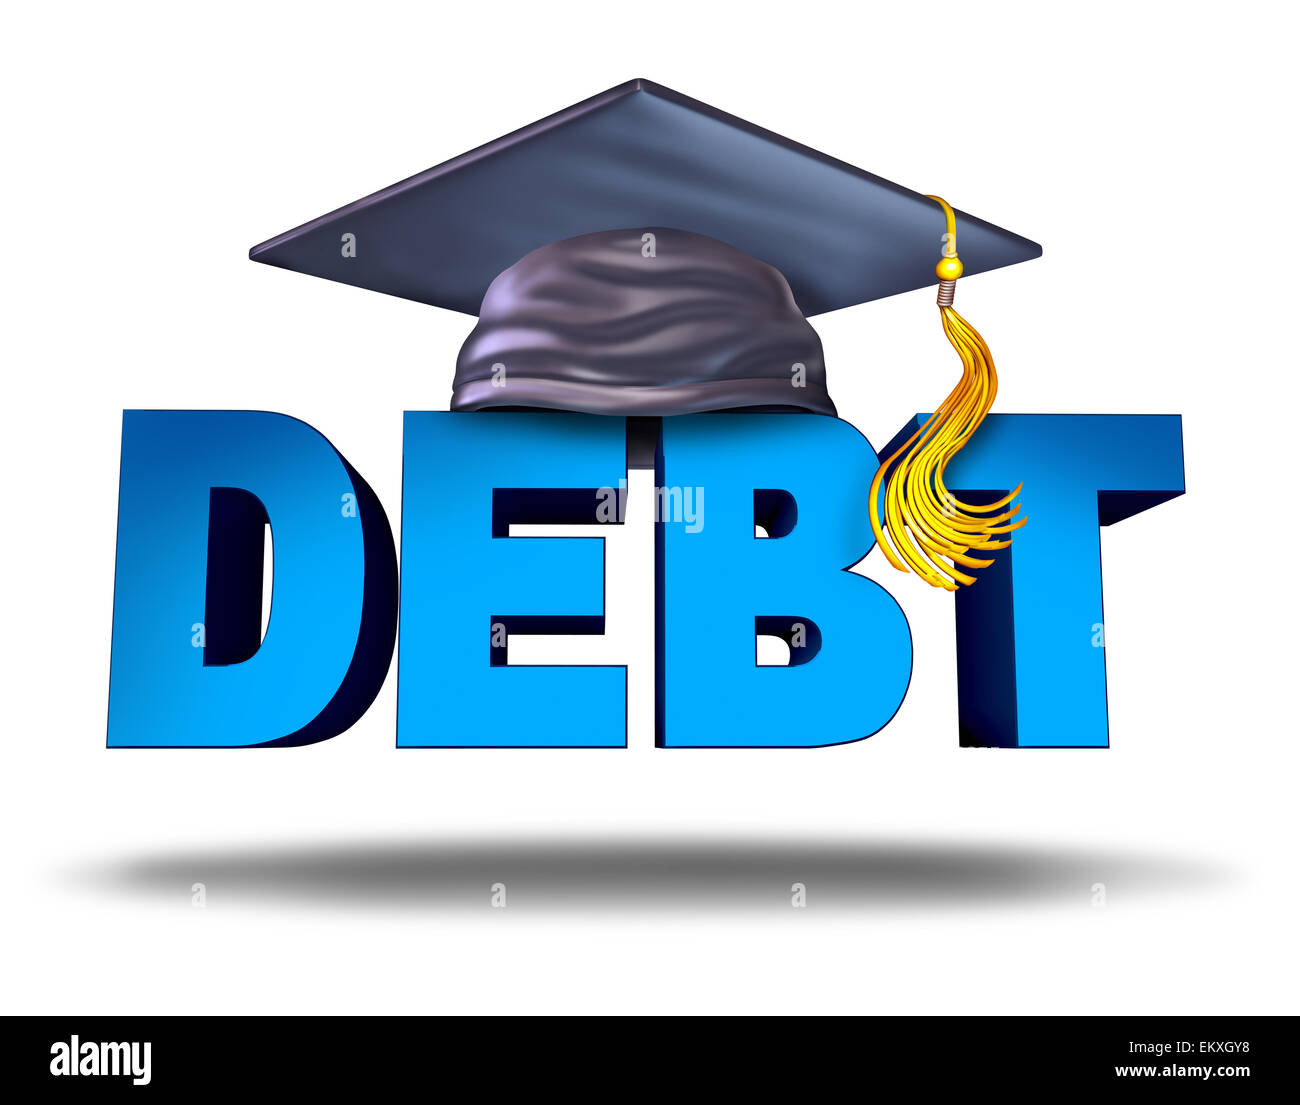 Student Schulden Finanzkonzept als ein Abschluss Doktorhut auf das Wort für Schule Unterricht Darlehensrückzahlung oder Kredite und Bildung Finanzierung Symbol für Universität und Studenten auf einem weißen Hintergrund. Stockfoto